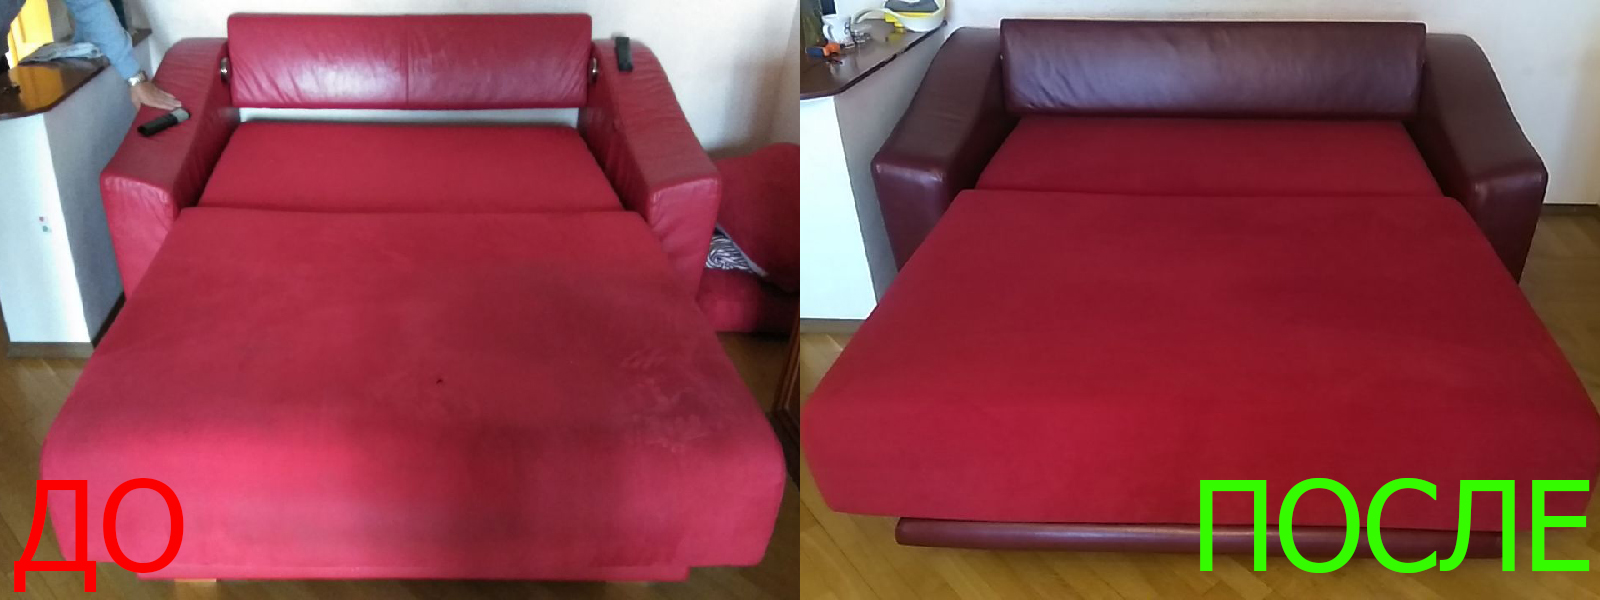 Ремонт механизма дивана в Керчи разумные цены на услуги, опытные специалисты